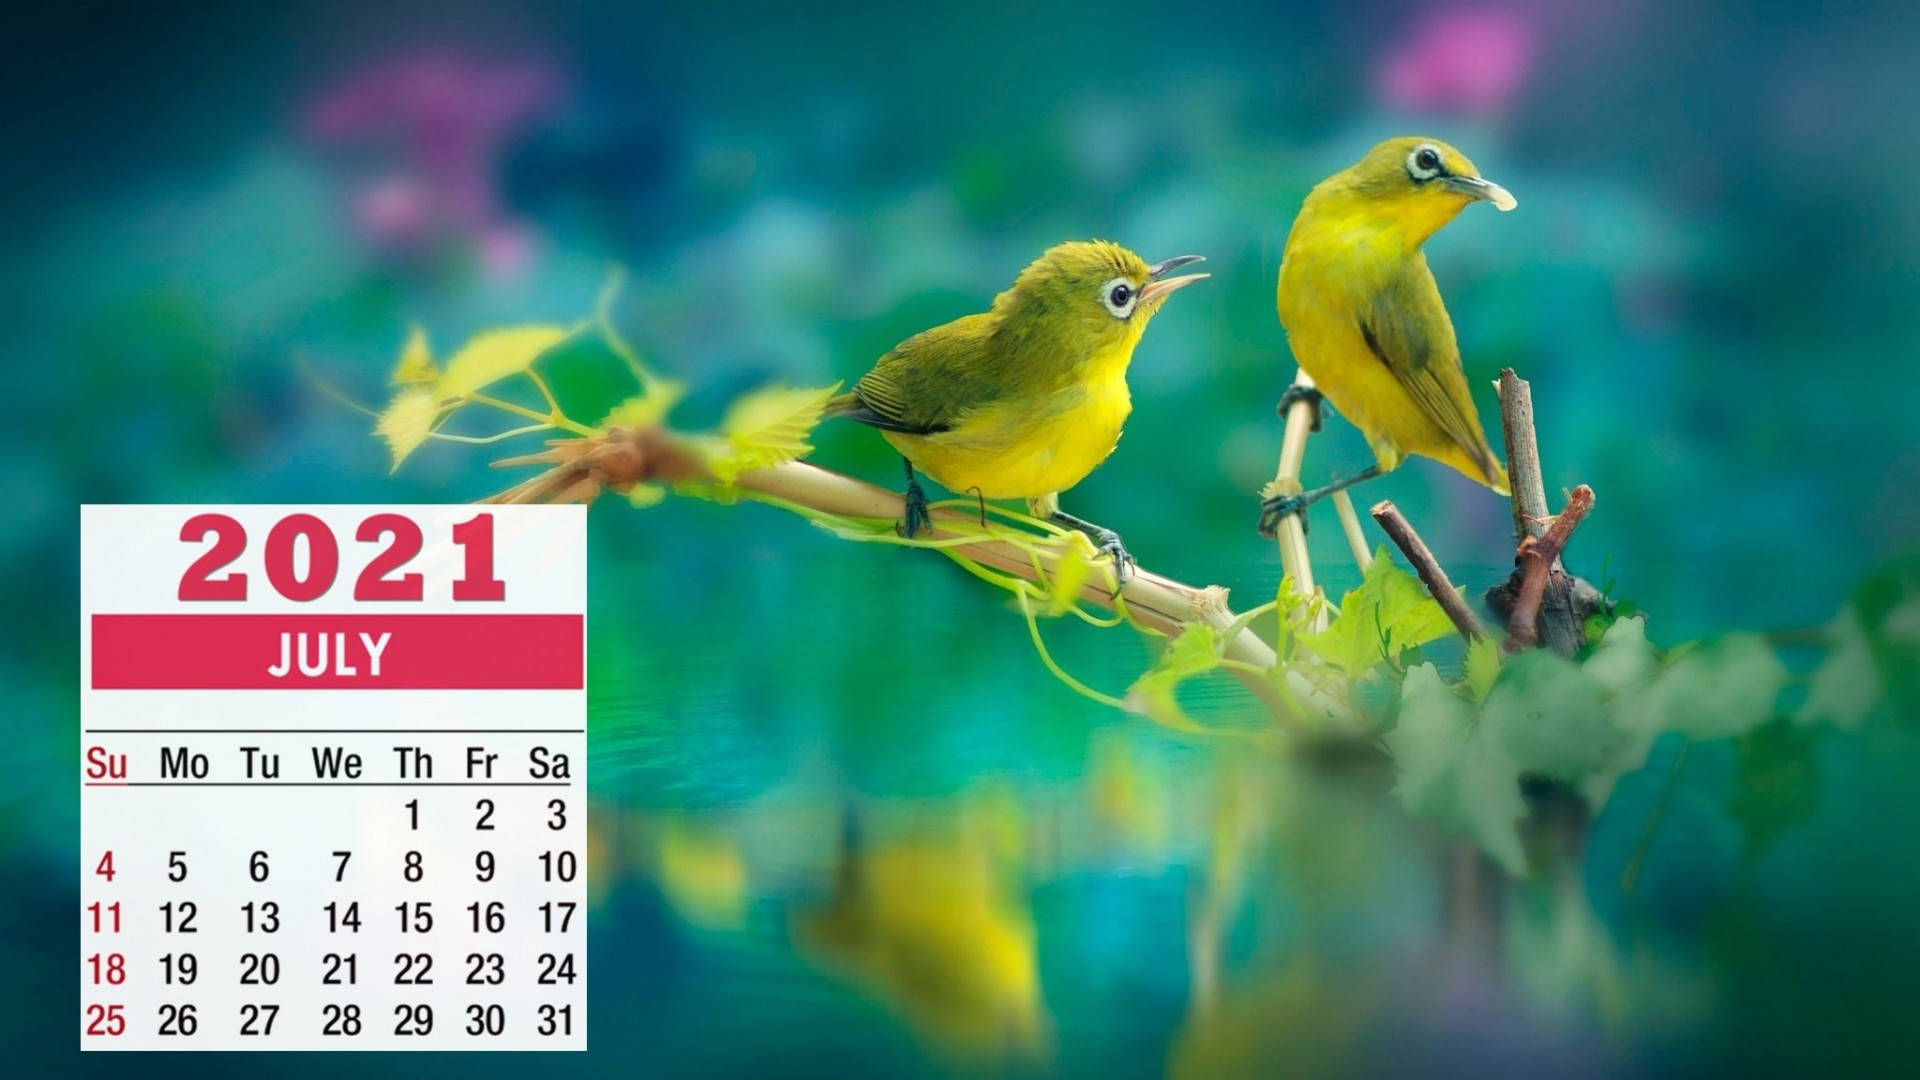 Recebaa Chegada De Julho Com Dois Pássaros Verdes Vibrantes Como Papel De Parede Do Seu Computador Ou Celular. Papel de Parede